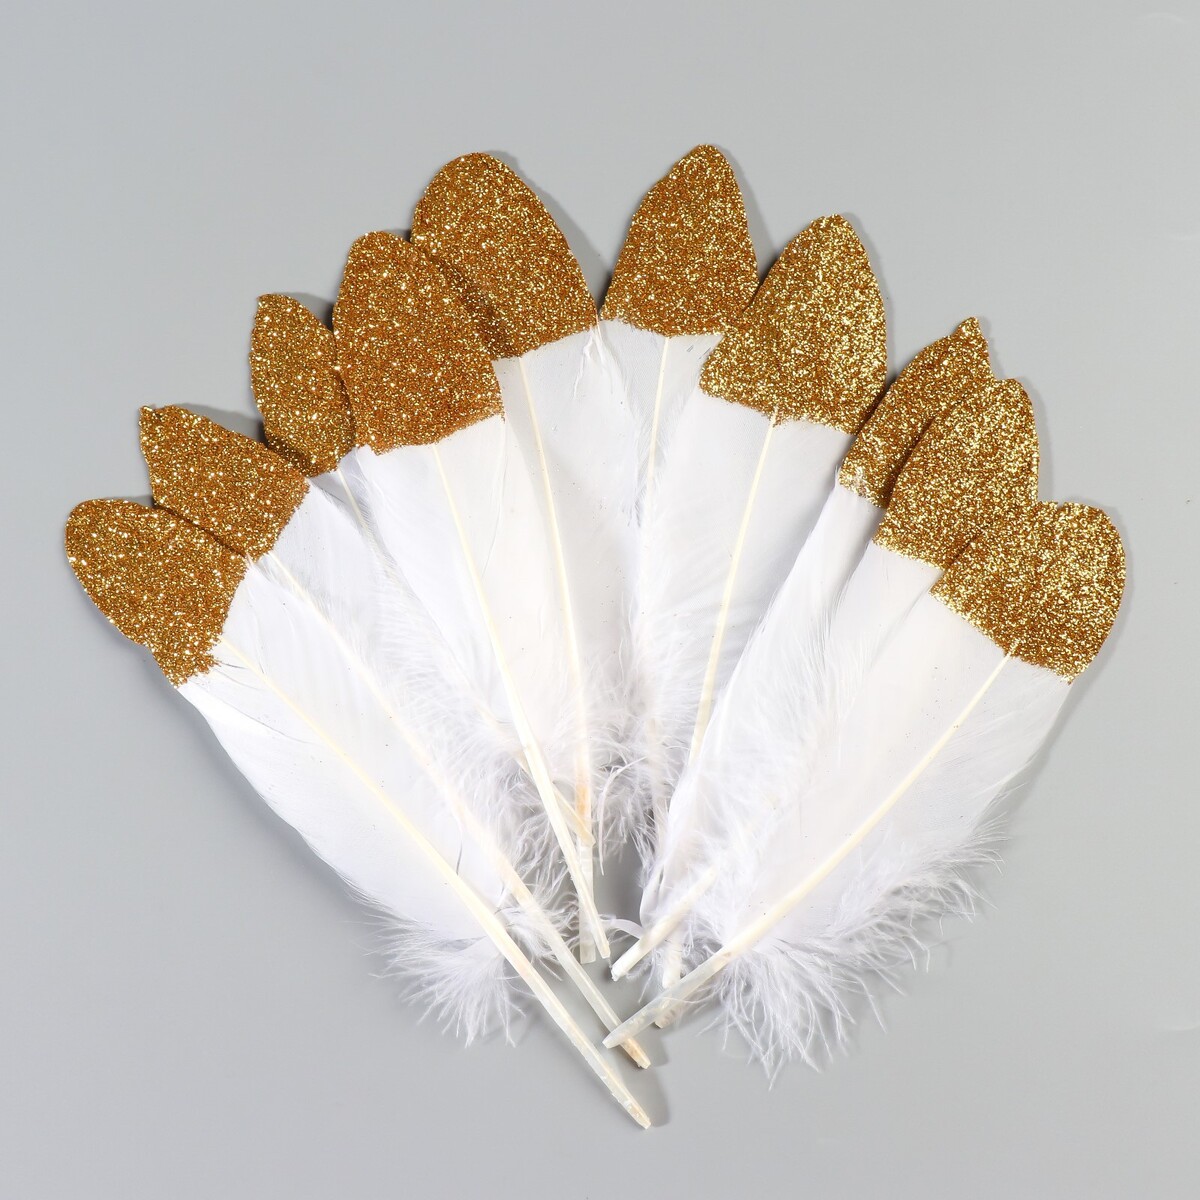 Набор перьев гуся 15-20 см, 10 шт, белый с золотой крошкой набор перьев гуся 13 18 см 20 шт светло фиолетовый